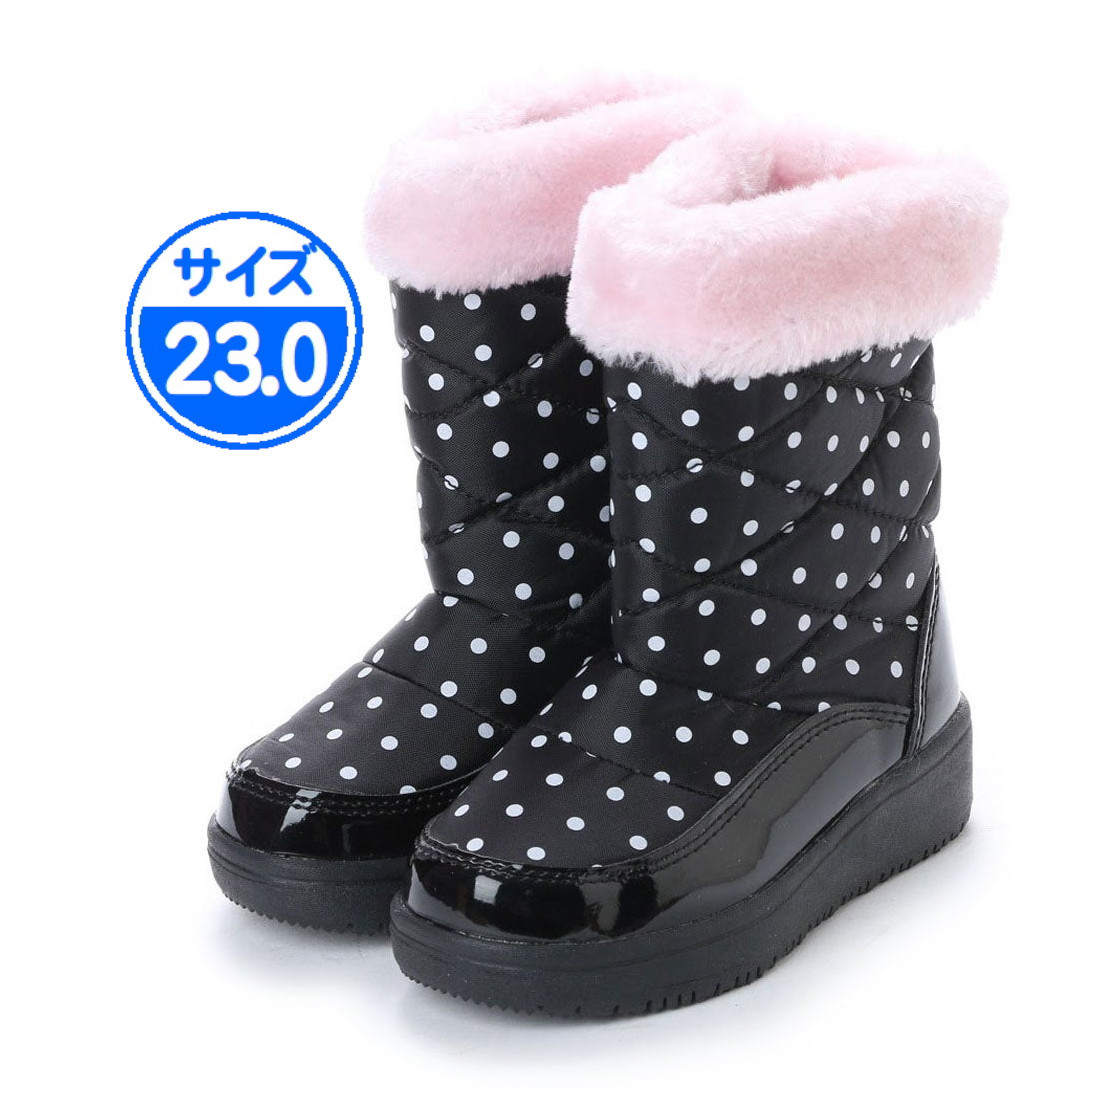 【新品 未使用】子供用 防寒ブーツ ブラック ピンク 23.0cm 17991